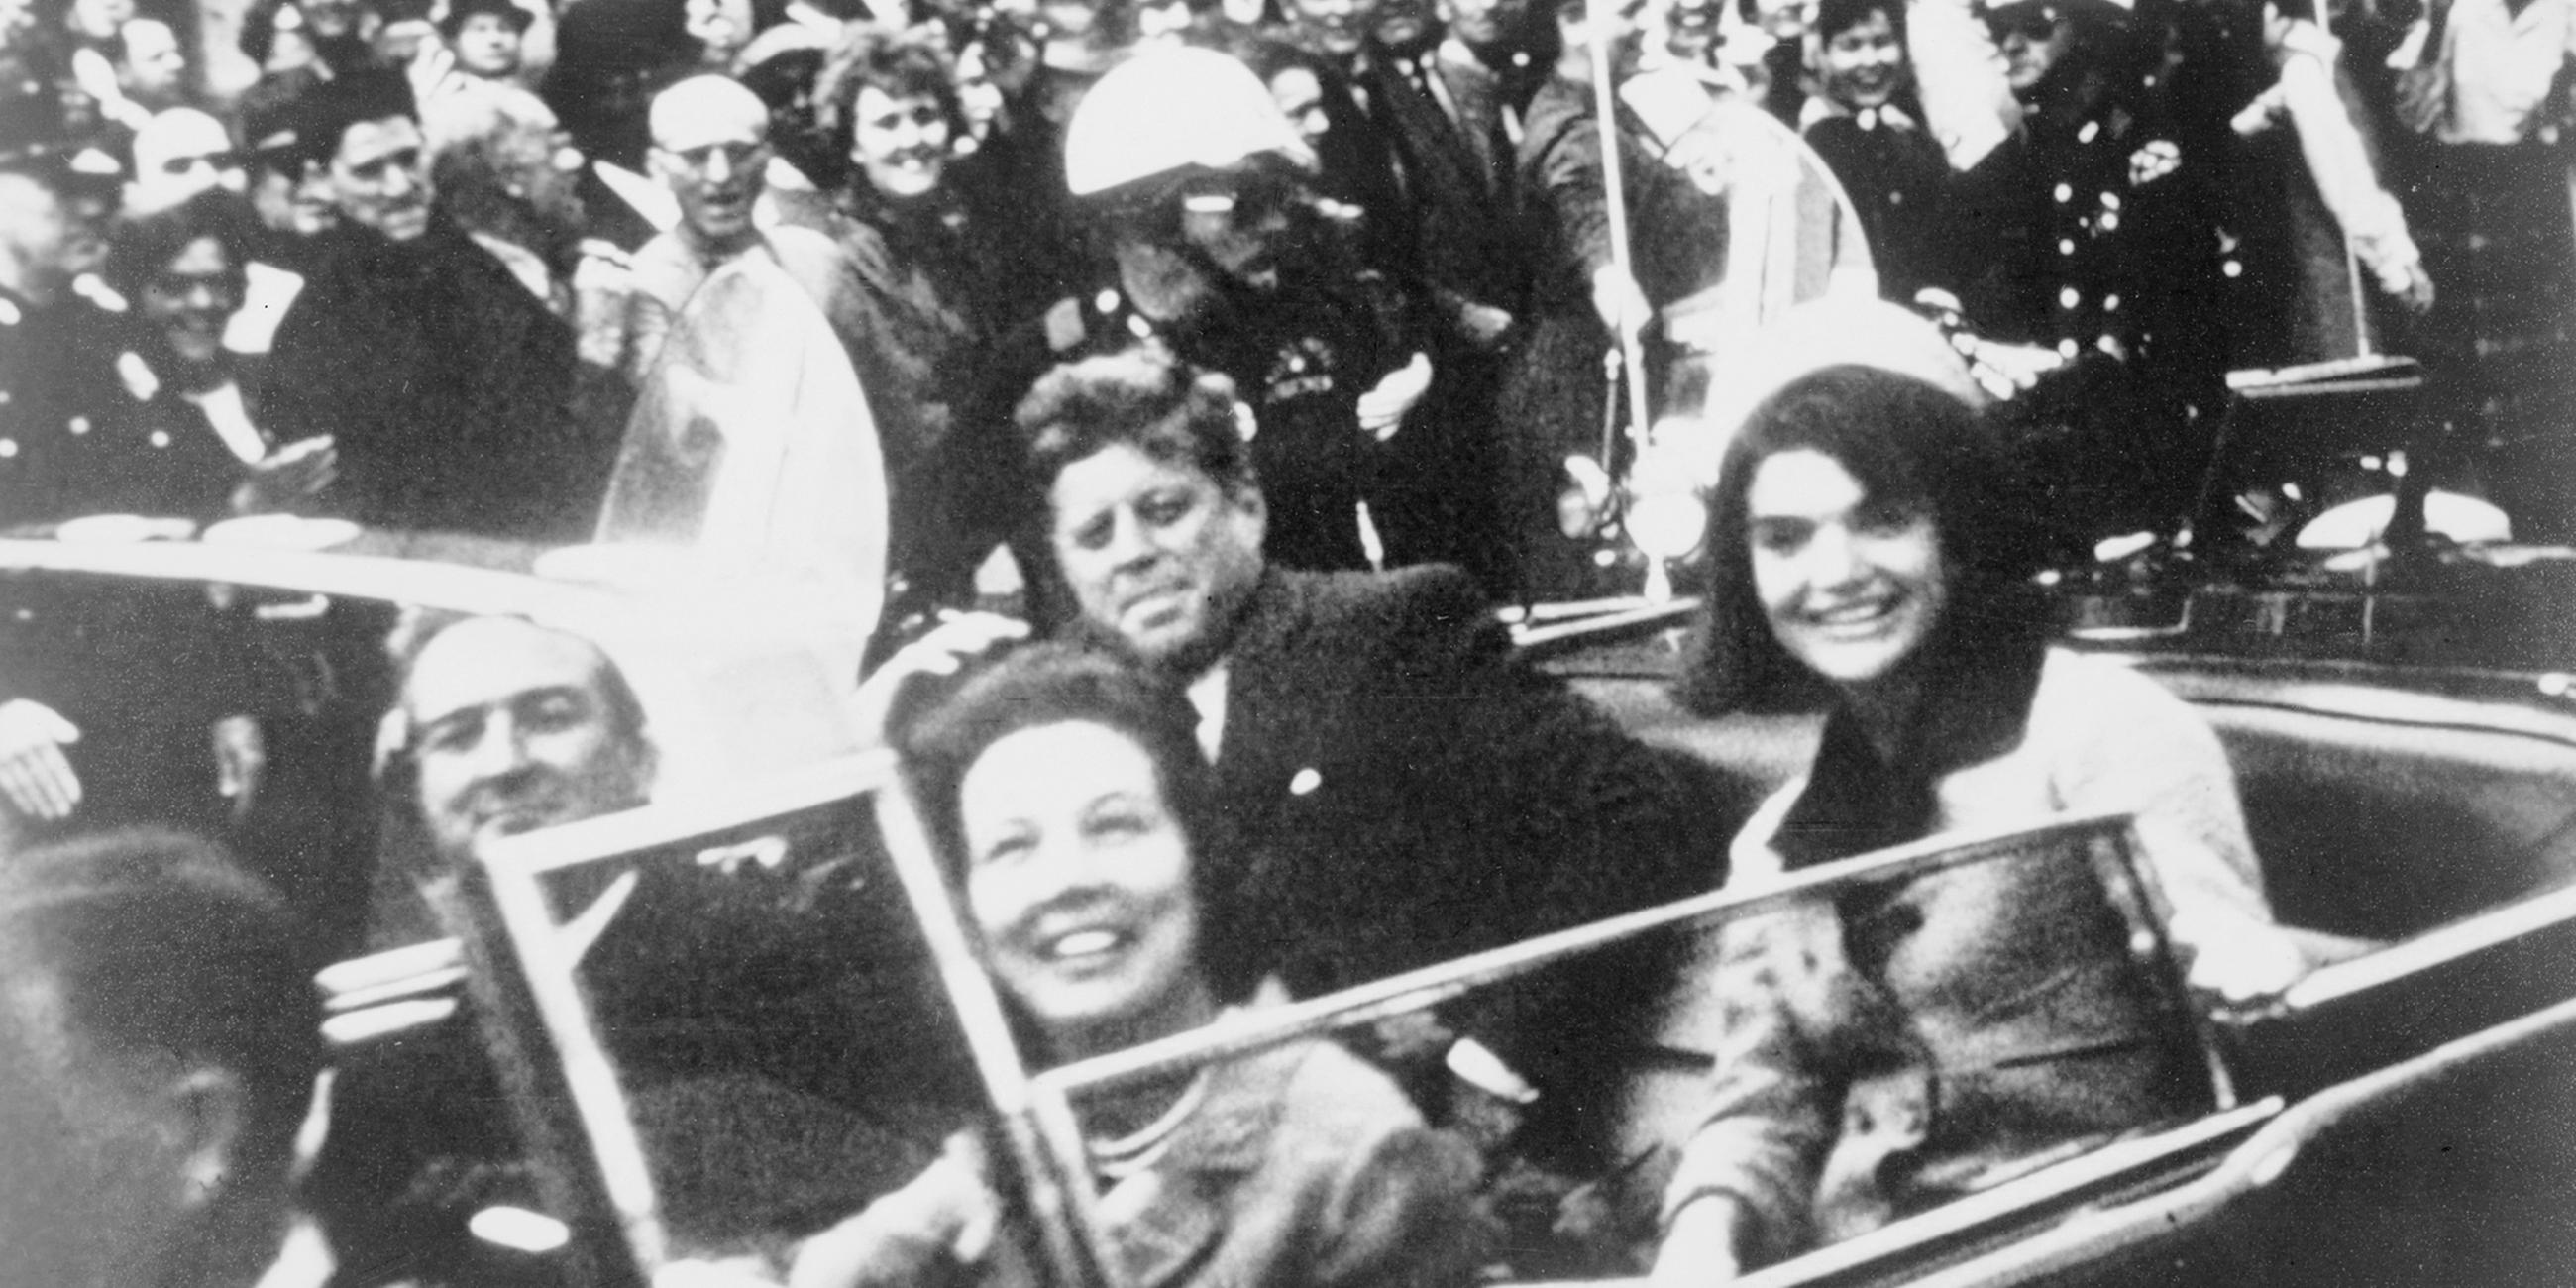 Archiv: Der ehemalige US-Präsident John F. Kennedy (C), die First Lady Jacqueline Kennedy (R) und der Gouverneur von Texas, John Connally (L) und seine Frau, sind in der Autokolonne des Präsidenten zu sehen, kurz bevor Kennedy in Dallas, Texas, erschossen wurde Dieses Handout-Bild wurde am 22. November 1963 aufgenommen. 